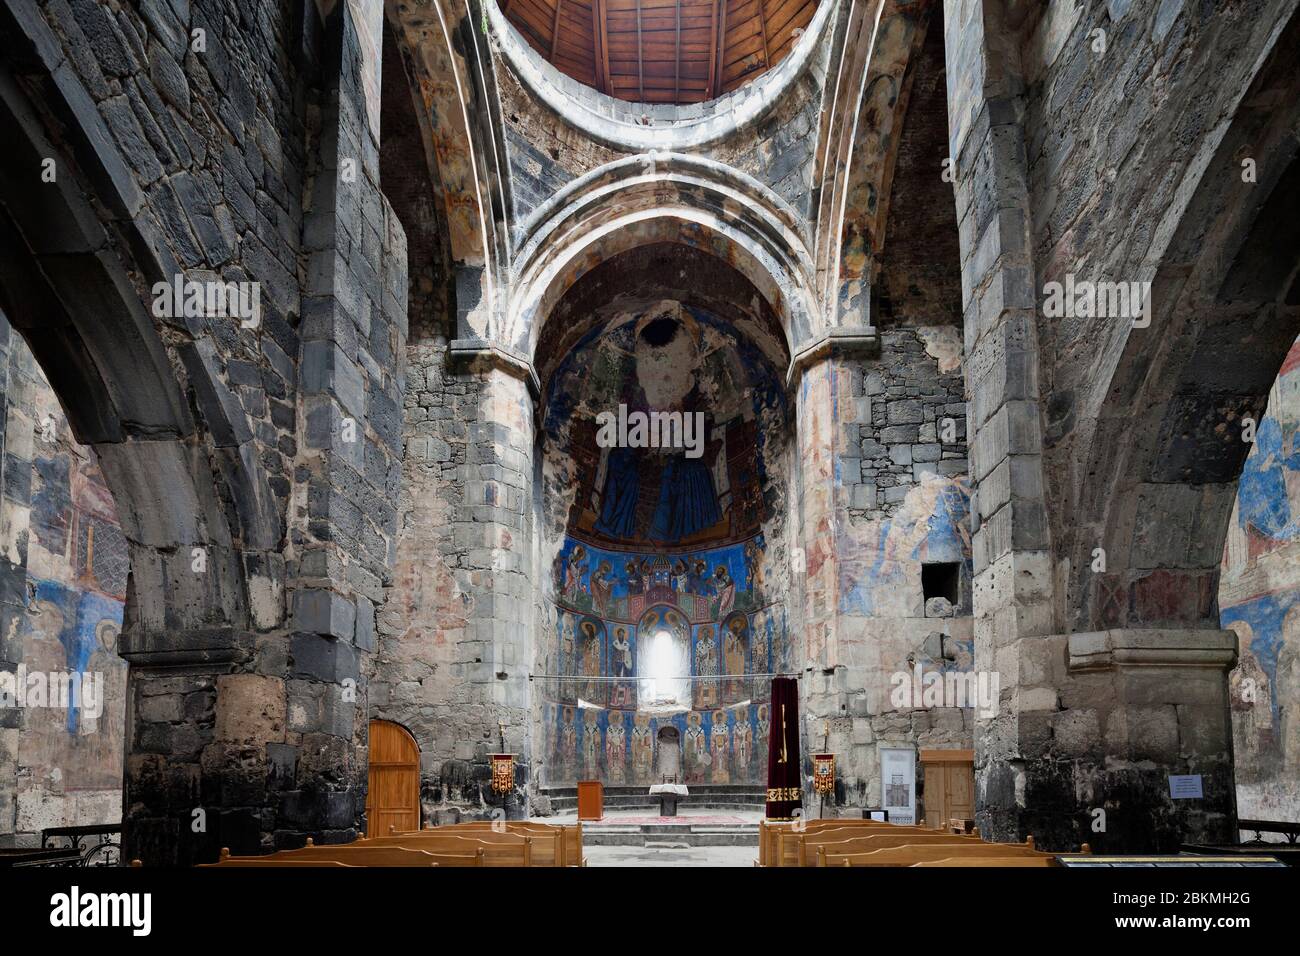 Intérieur et fresques du monastère Akhtala, église arménienne, complexe médiéval de monastère, Akhtala, province de Lori, Arménie, Caucase, Asie Banque D'Images